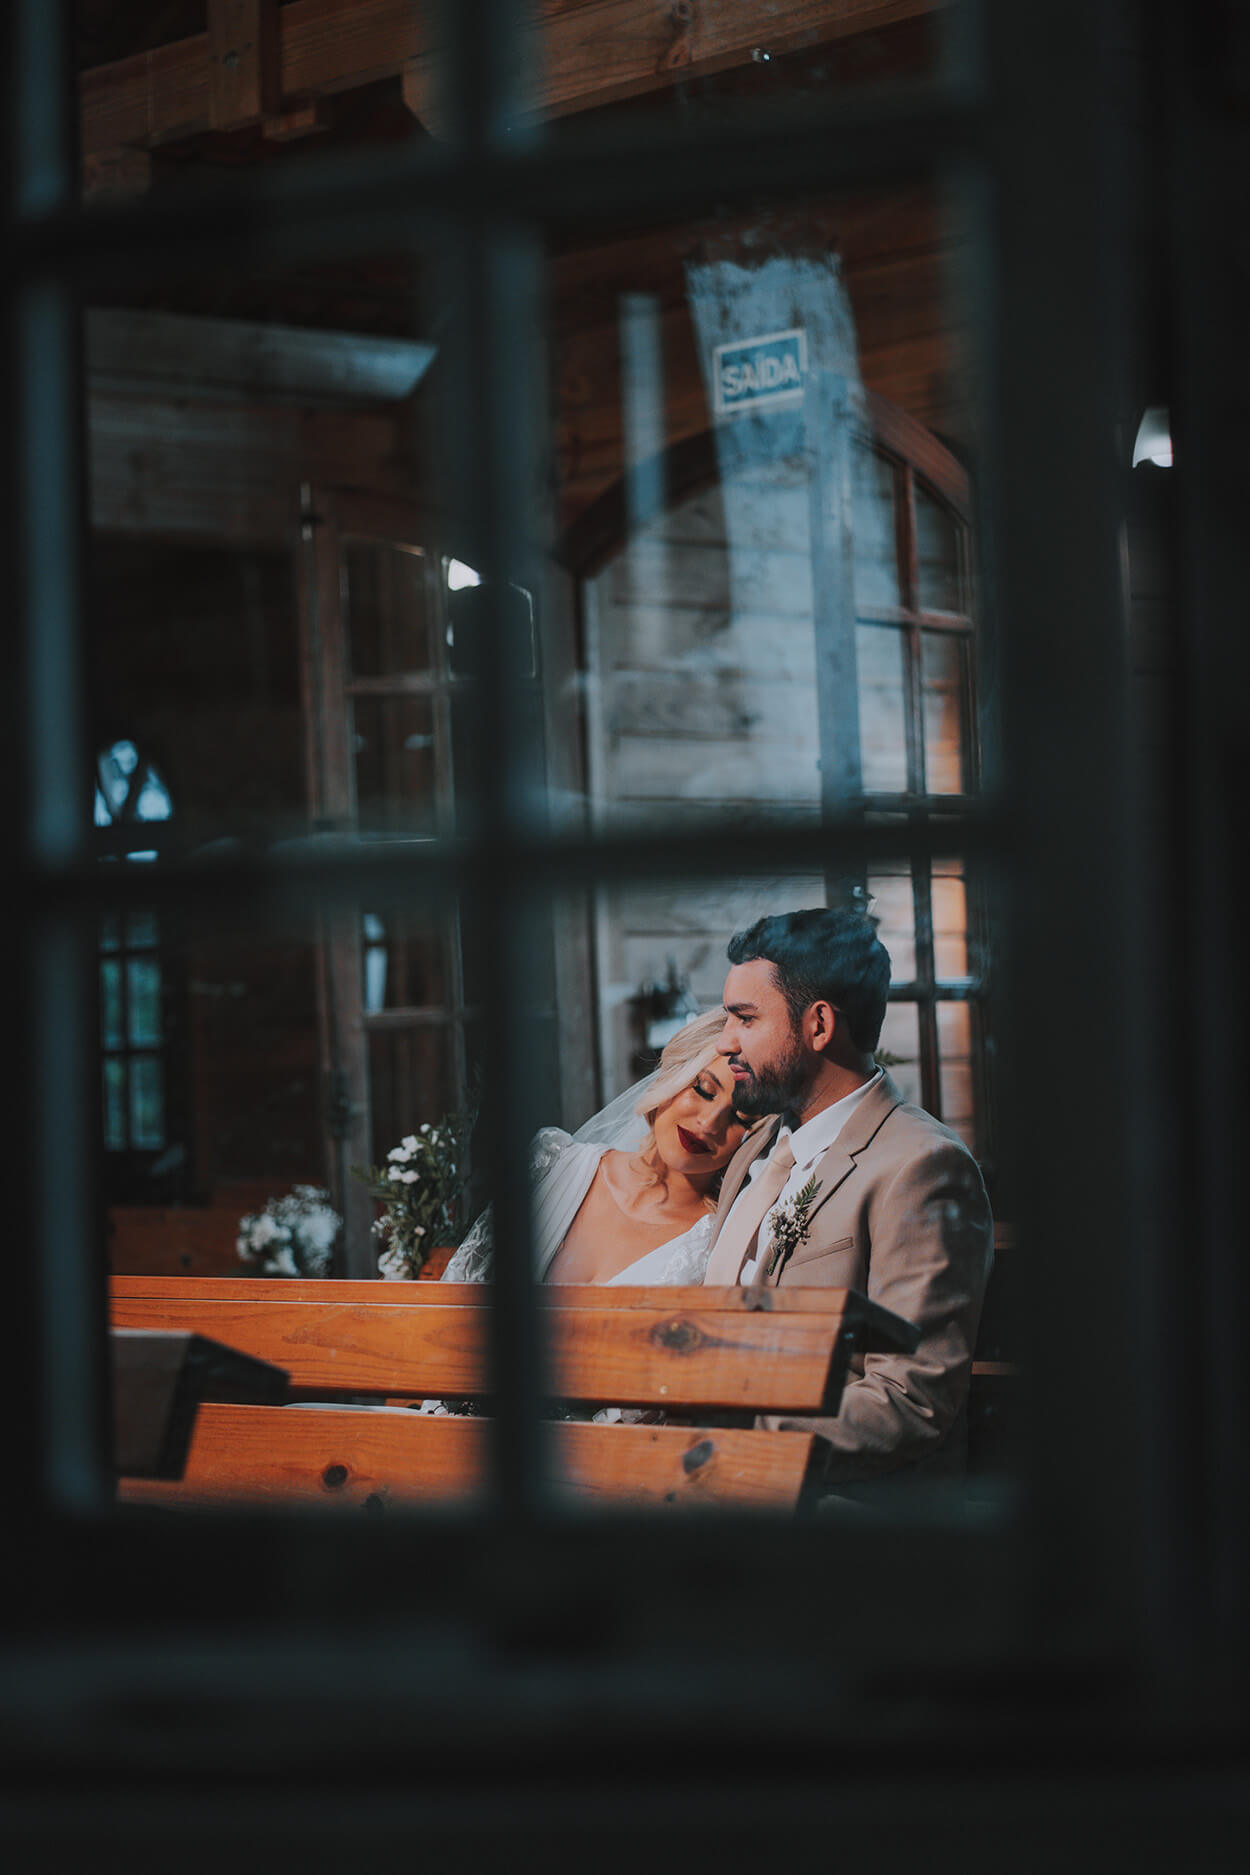 Foto tirada através da janela do casal sentado em banco de madeira